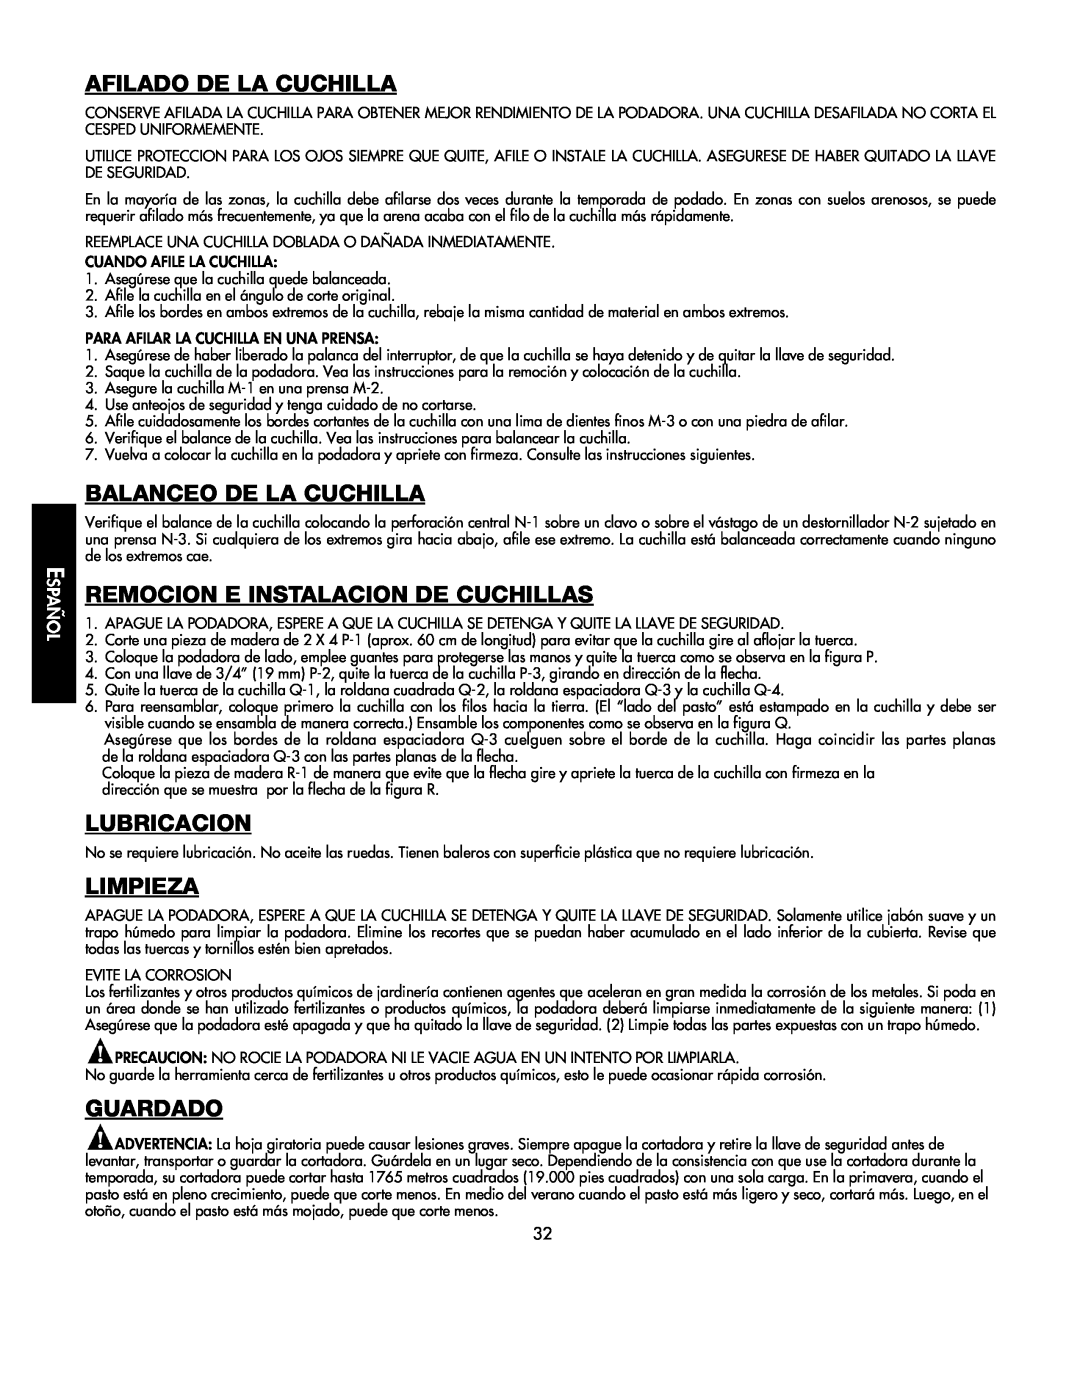 Black & Decker 598968-00 Afilado De La Cuchilla, Balanceo De La Cuchilla, Remocion E Instalacion De Cuchillas, Lubricacion 